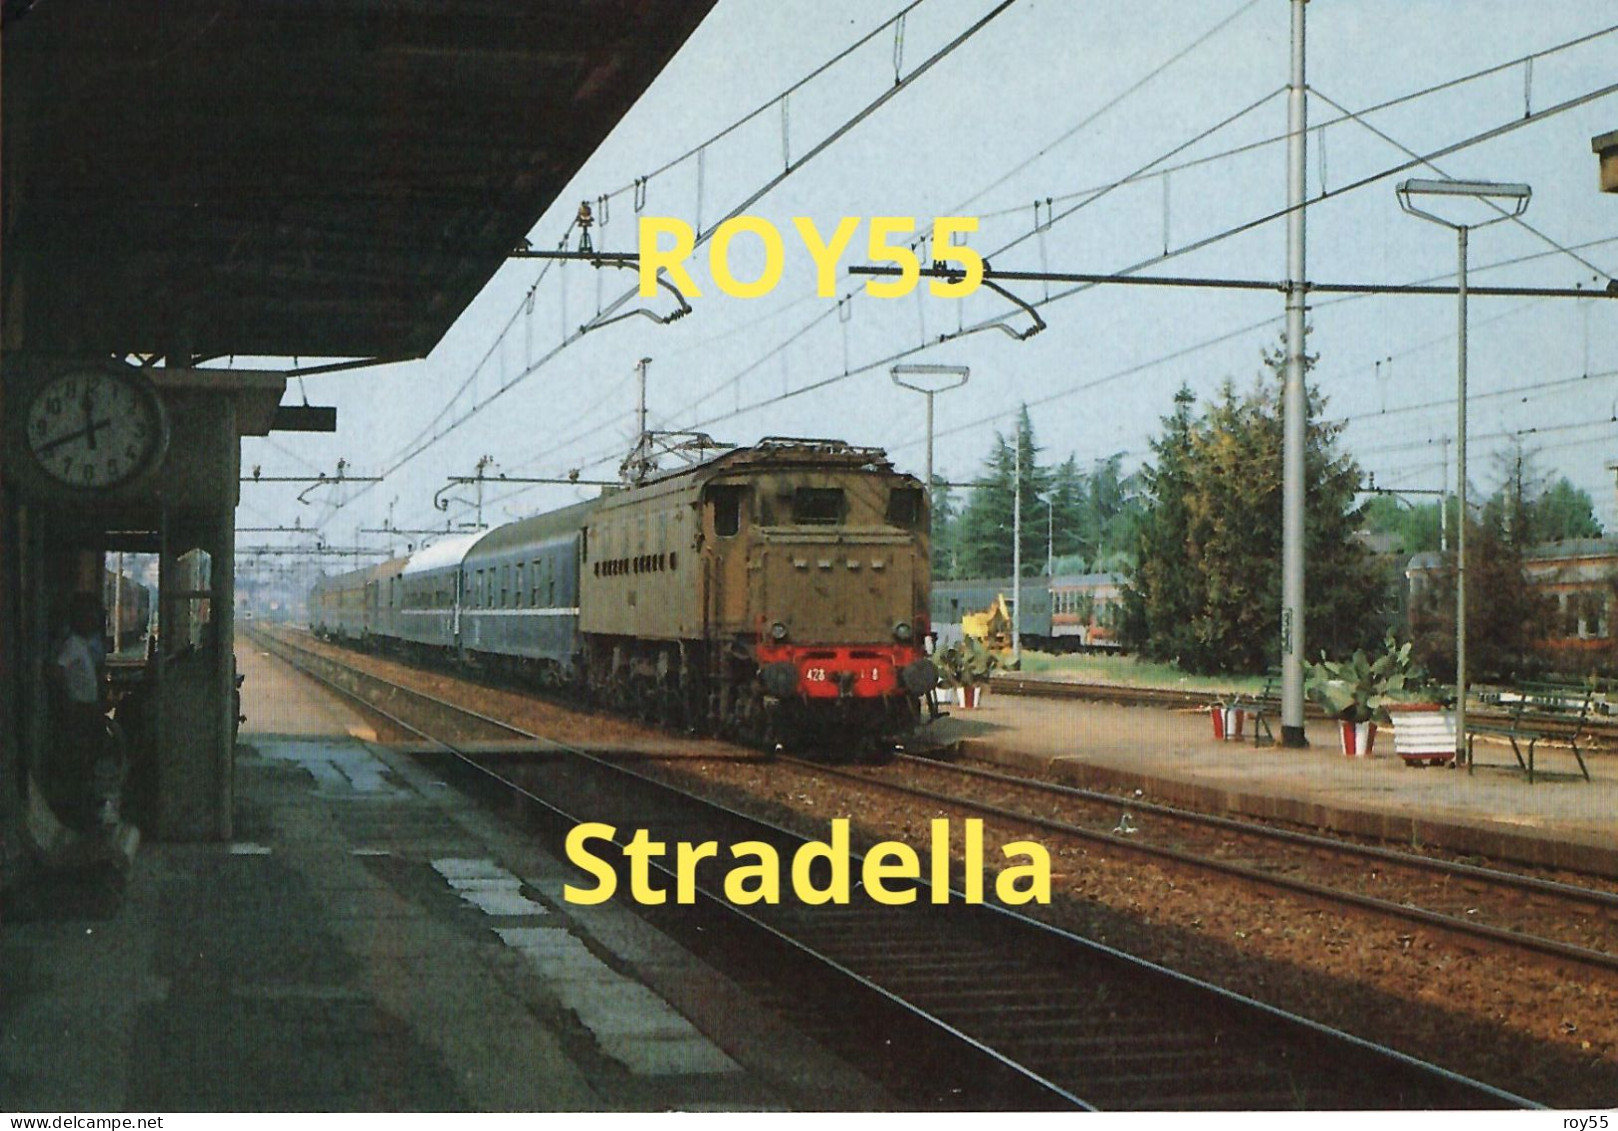 Lombardia Pavia Stradella Stazione Ferroviaria Treno Argento In Sosta Sul Binario Nel 1984 (v.retro) - Stazioni Con Treni